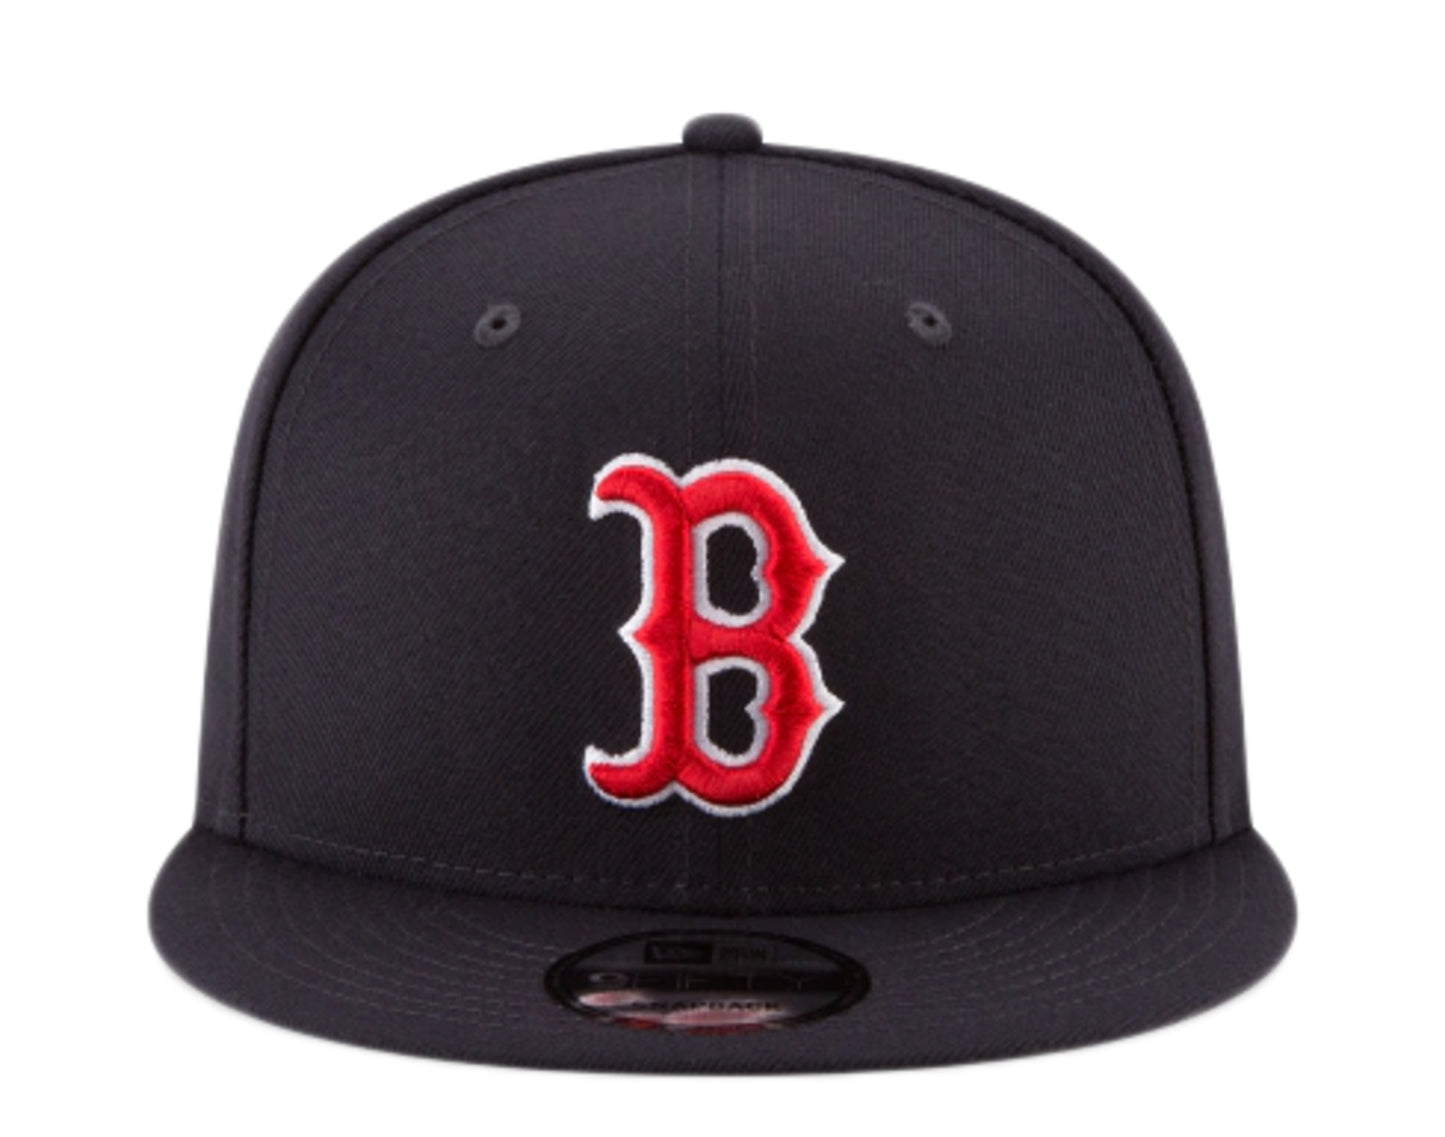 New Era 9Fifty MLB Boston Red Sox Basic Navy Blue Snapback Hat 11591076